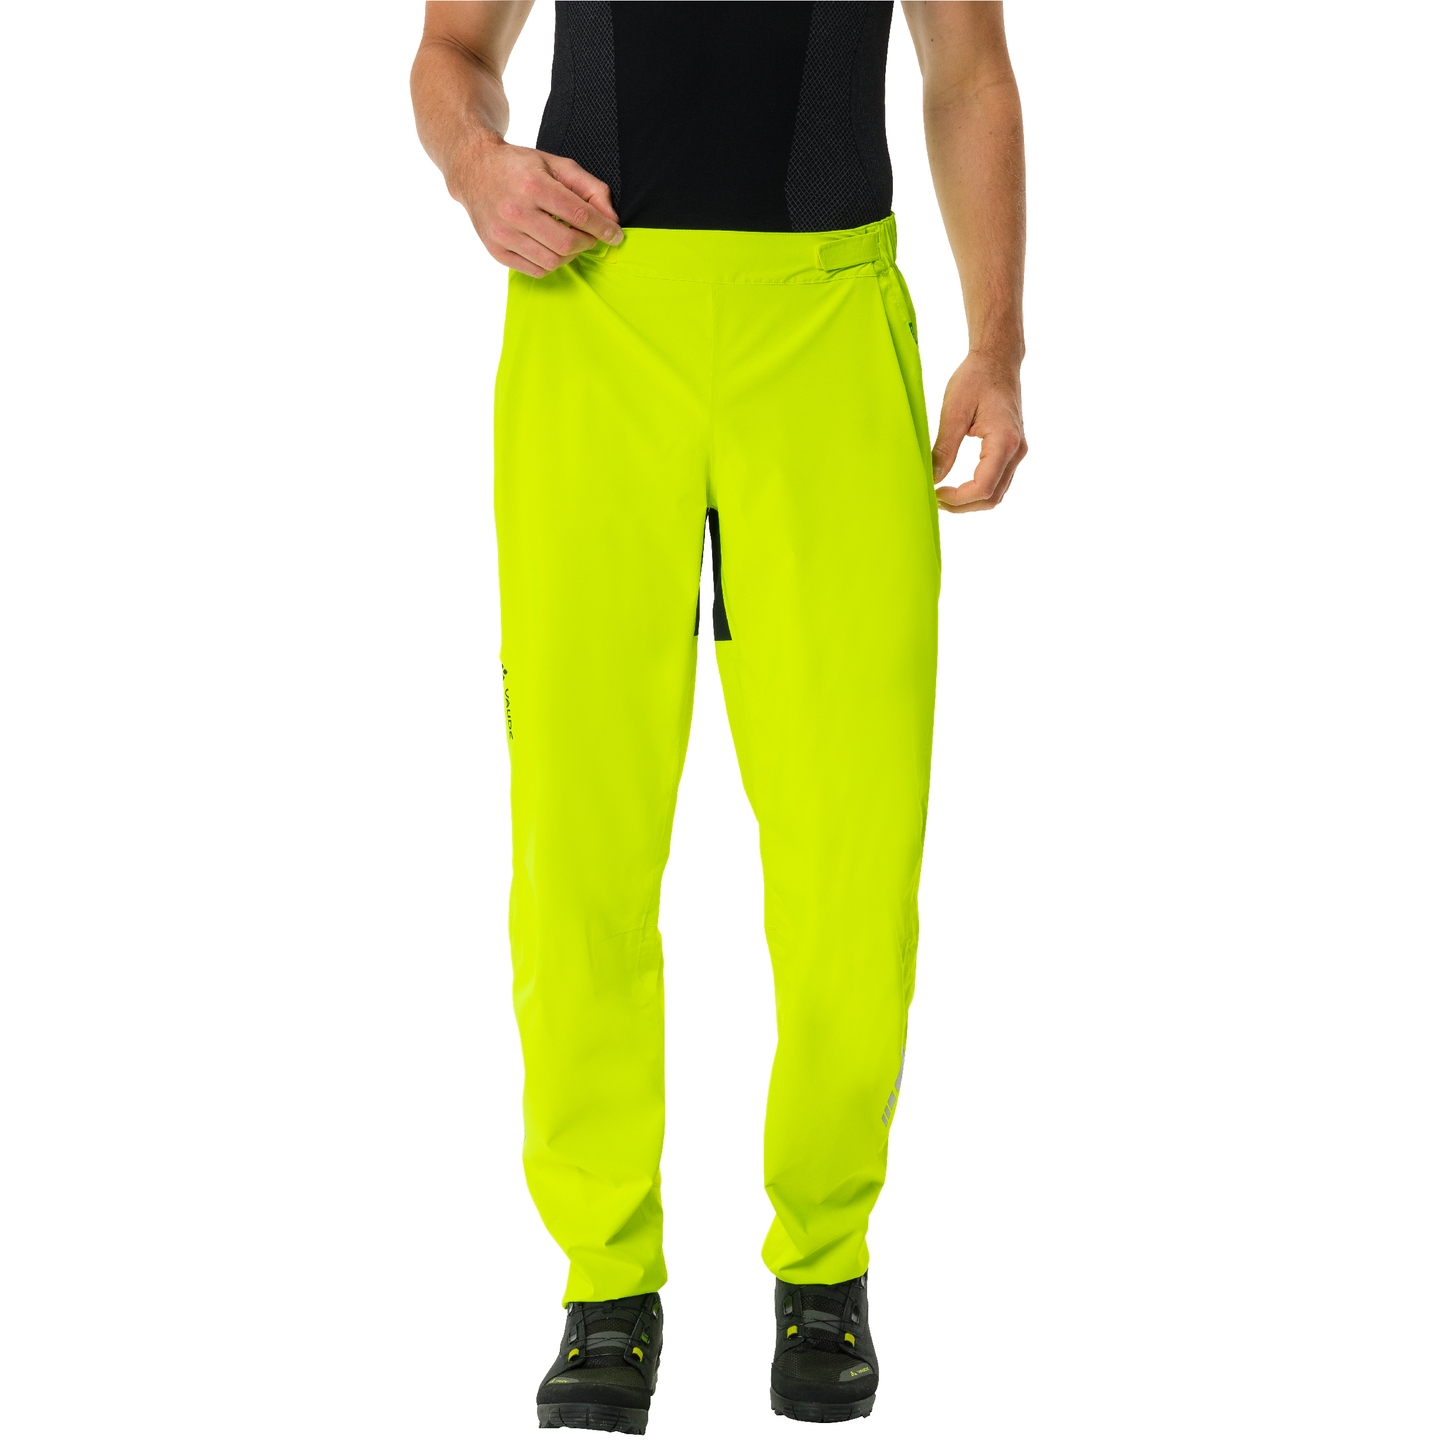 Immagine prodotto da Vaude Pantaloni Impermeabili Uomo - Moab - neon yellow